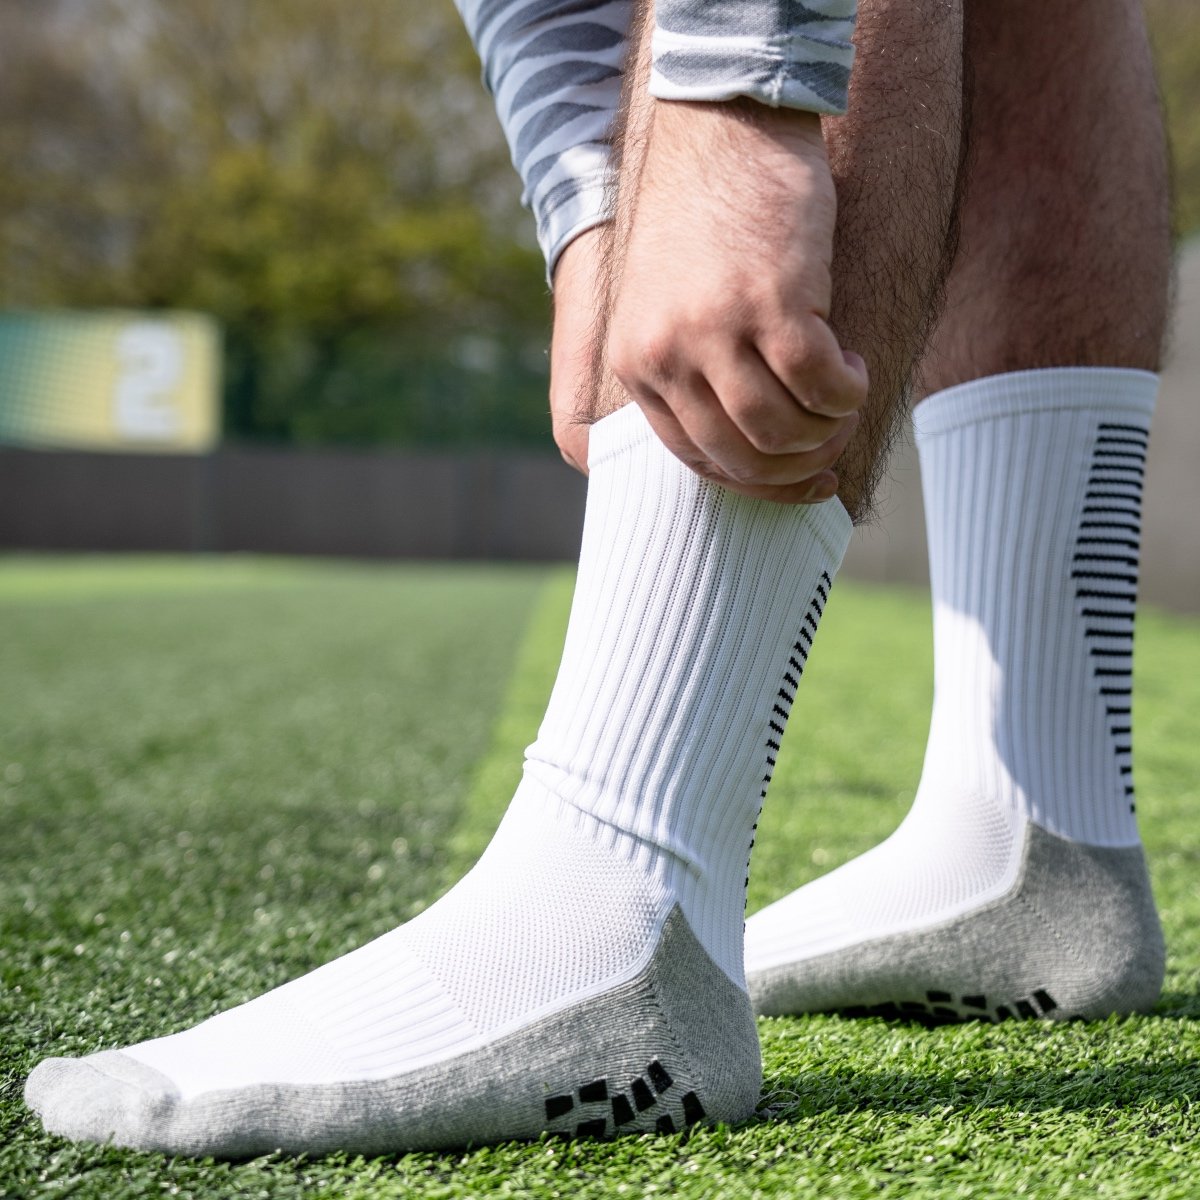 3 Pairs Pack White Soccer Socks Anti Slip Football Training Socks